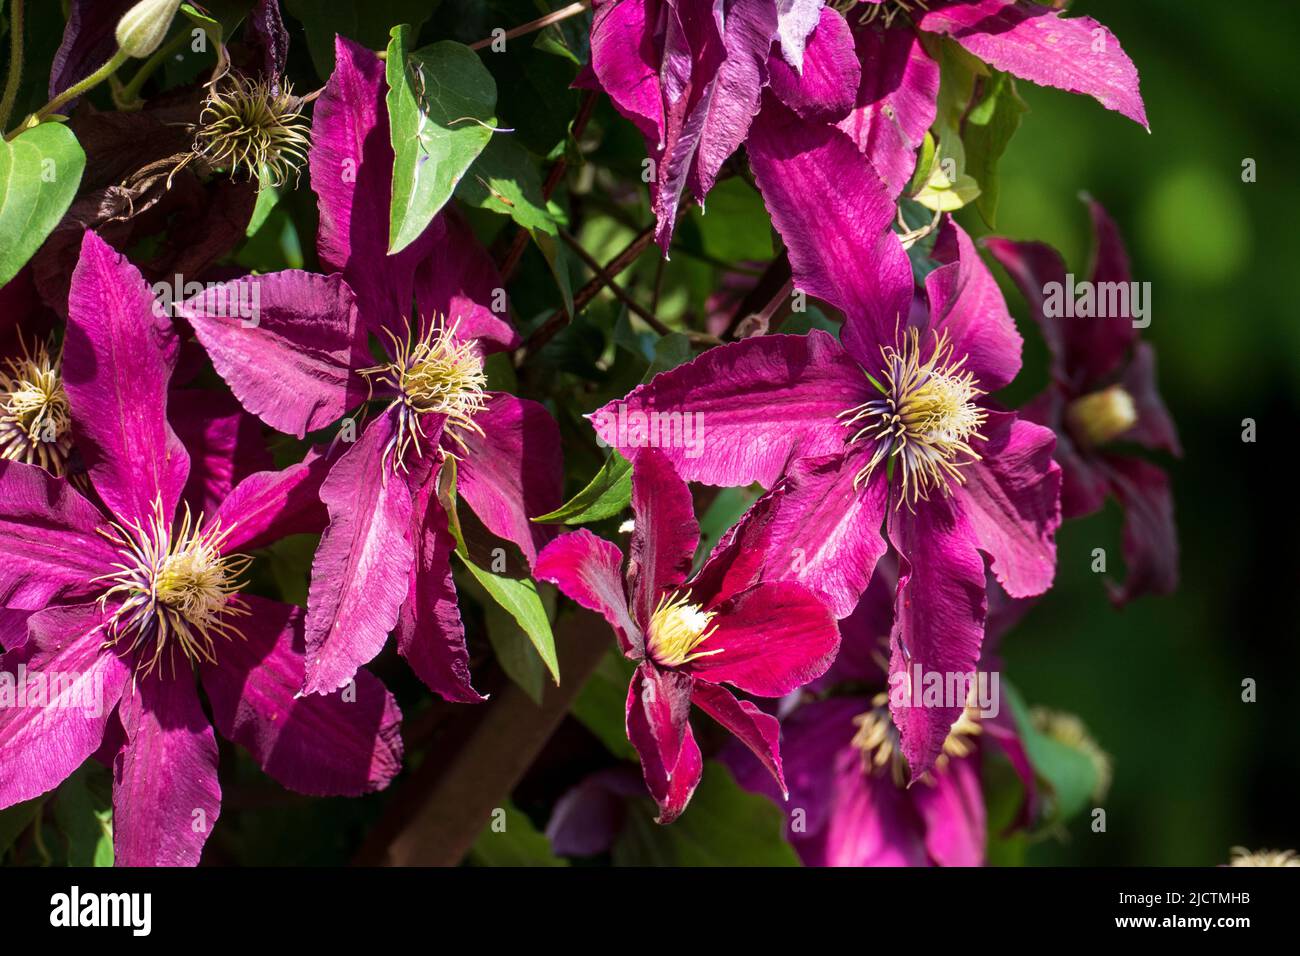 Violett farbene Clematis, Waldrebe Blüten wachsen an einem Holzbogen Foto de stock